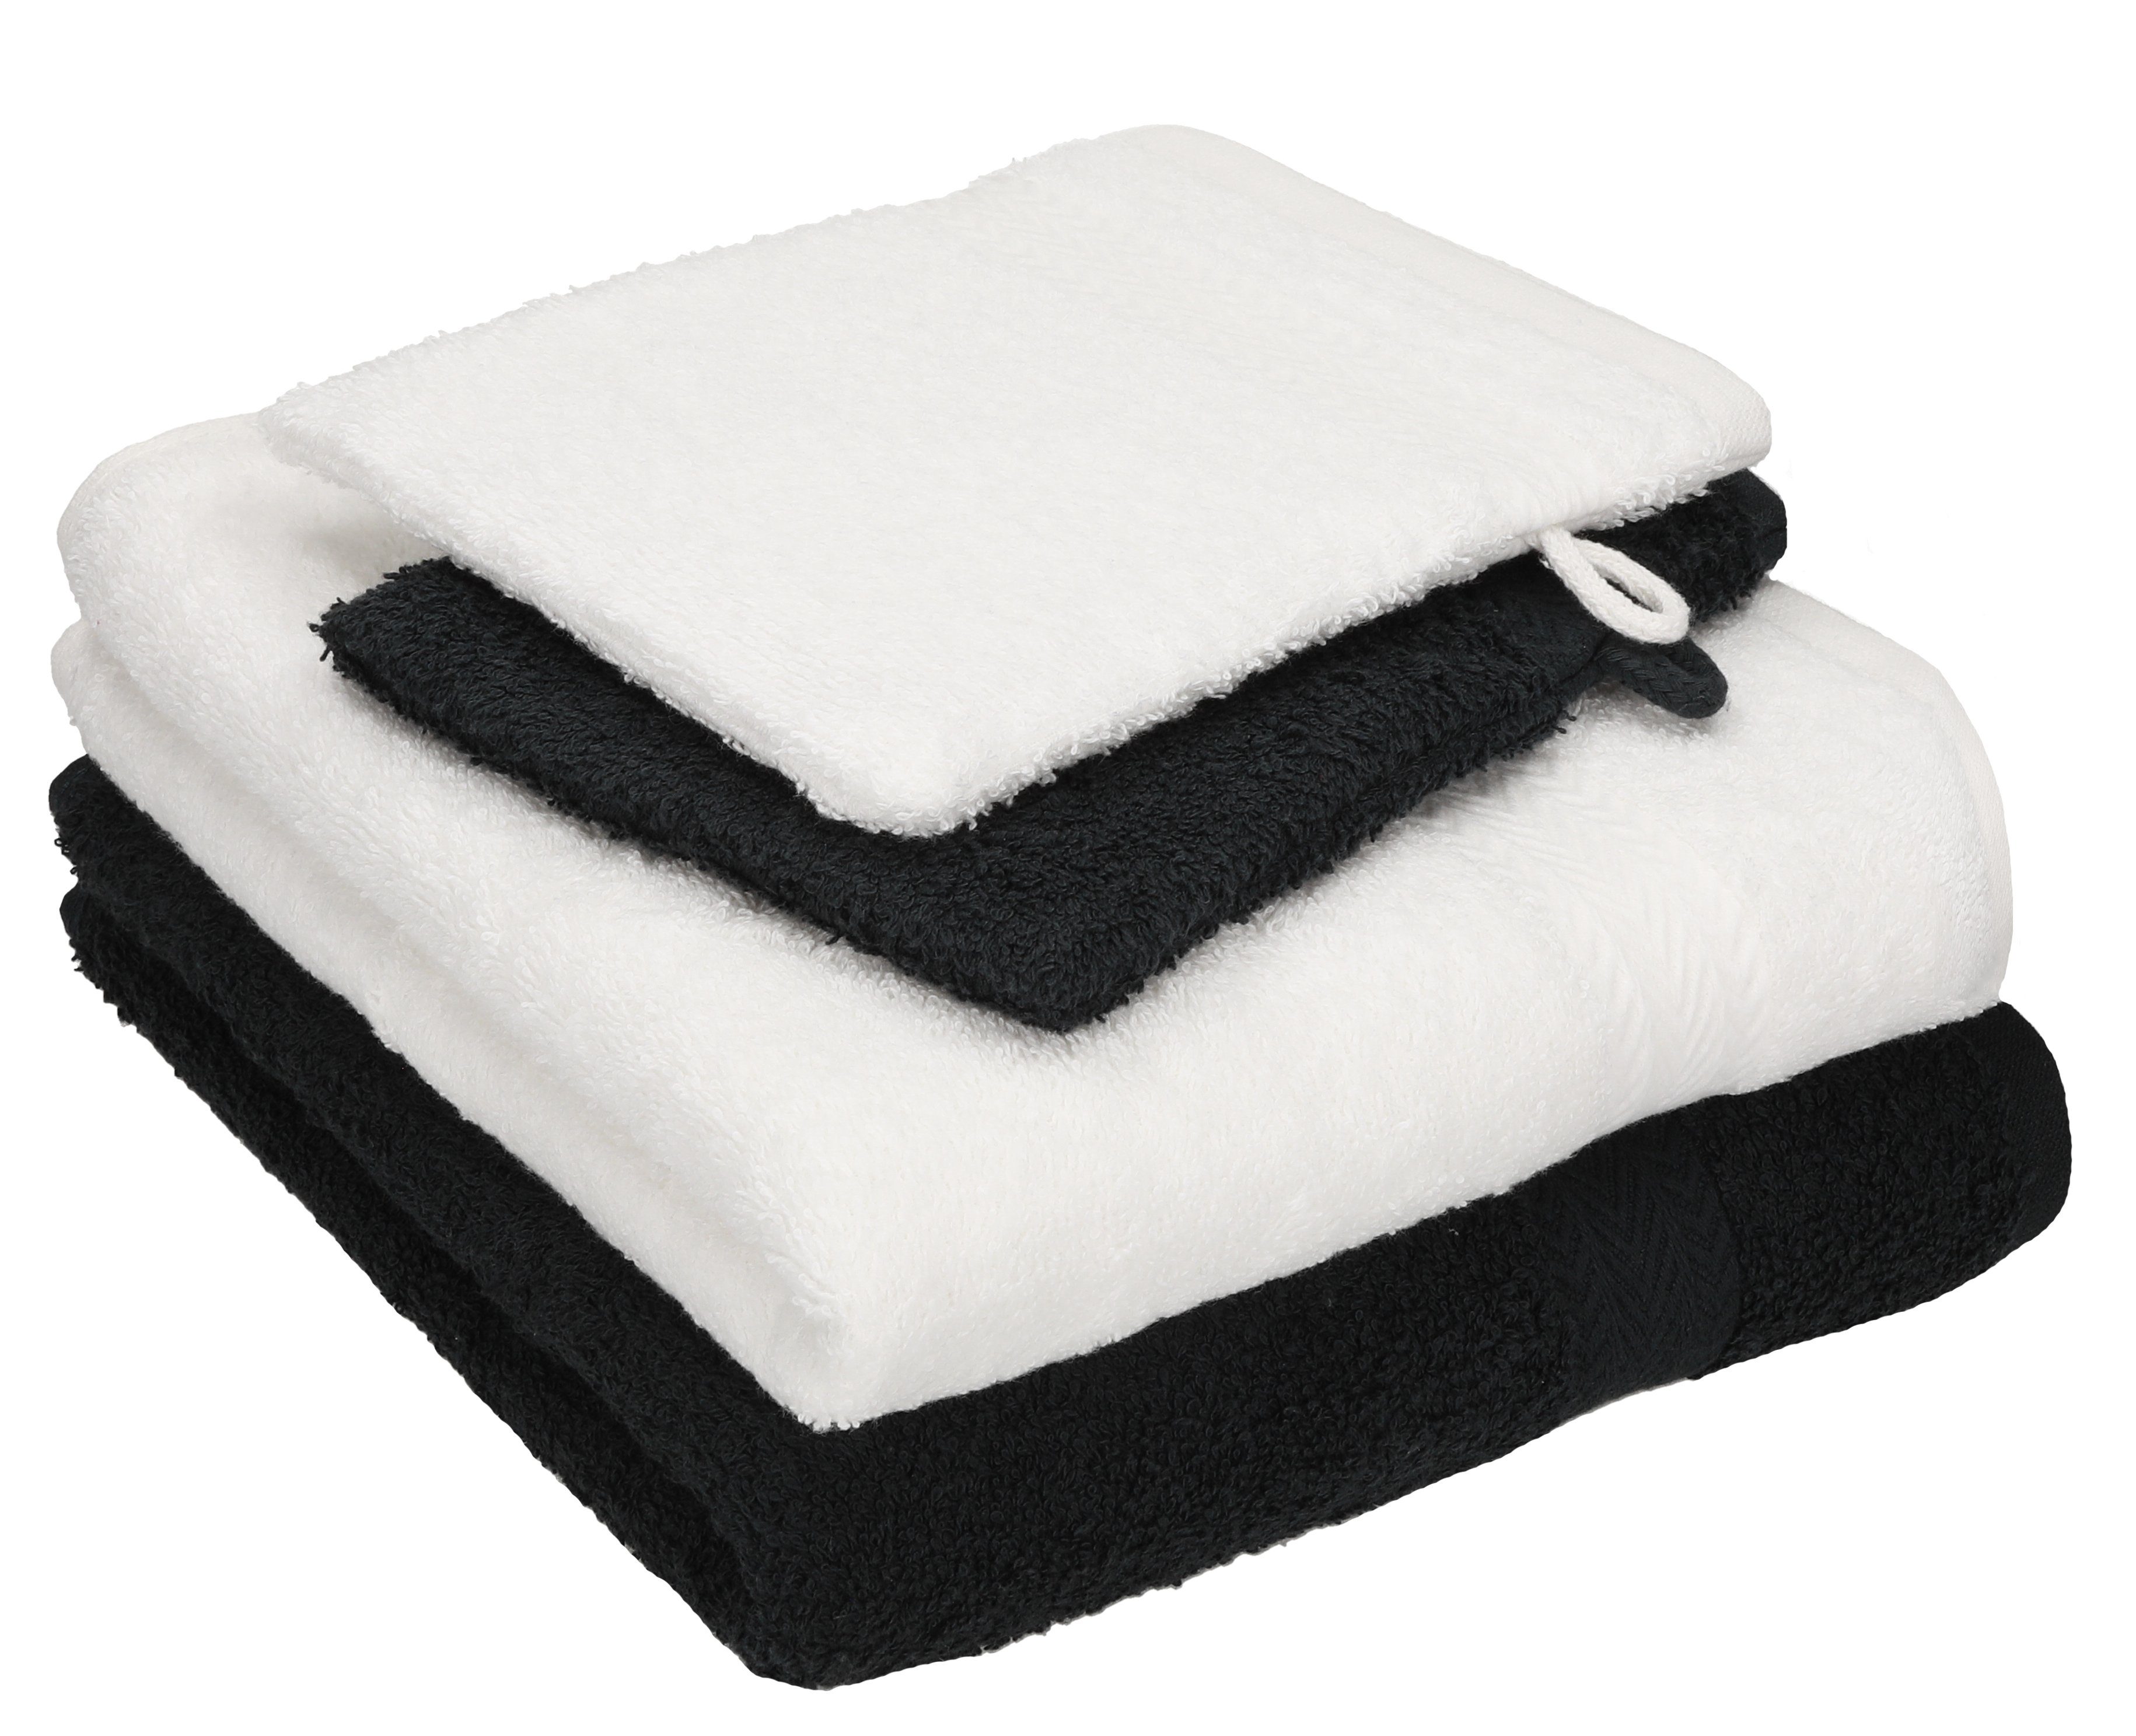 Betz Handtuch Set 4 TLG. Handtuch Set Happy Pack 100% Baumwolle 2 Handtücher 2 Waschhandschuhe, 100% Baumwolle, (4-tlg) weiß-schwarz